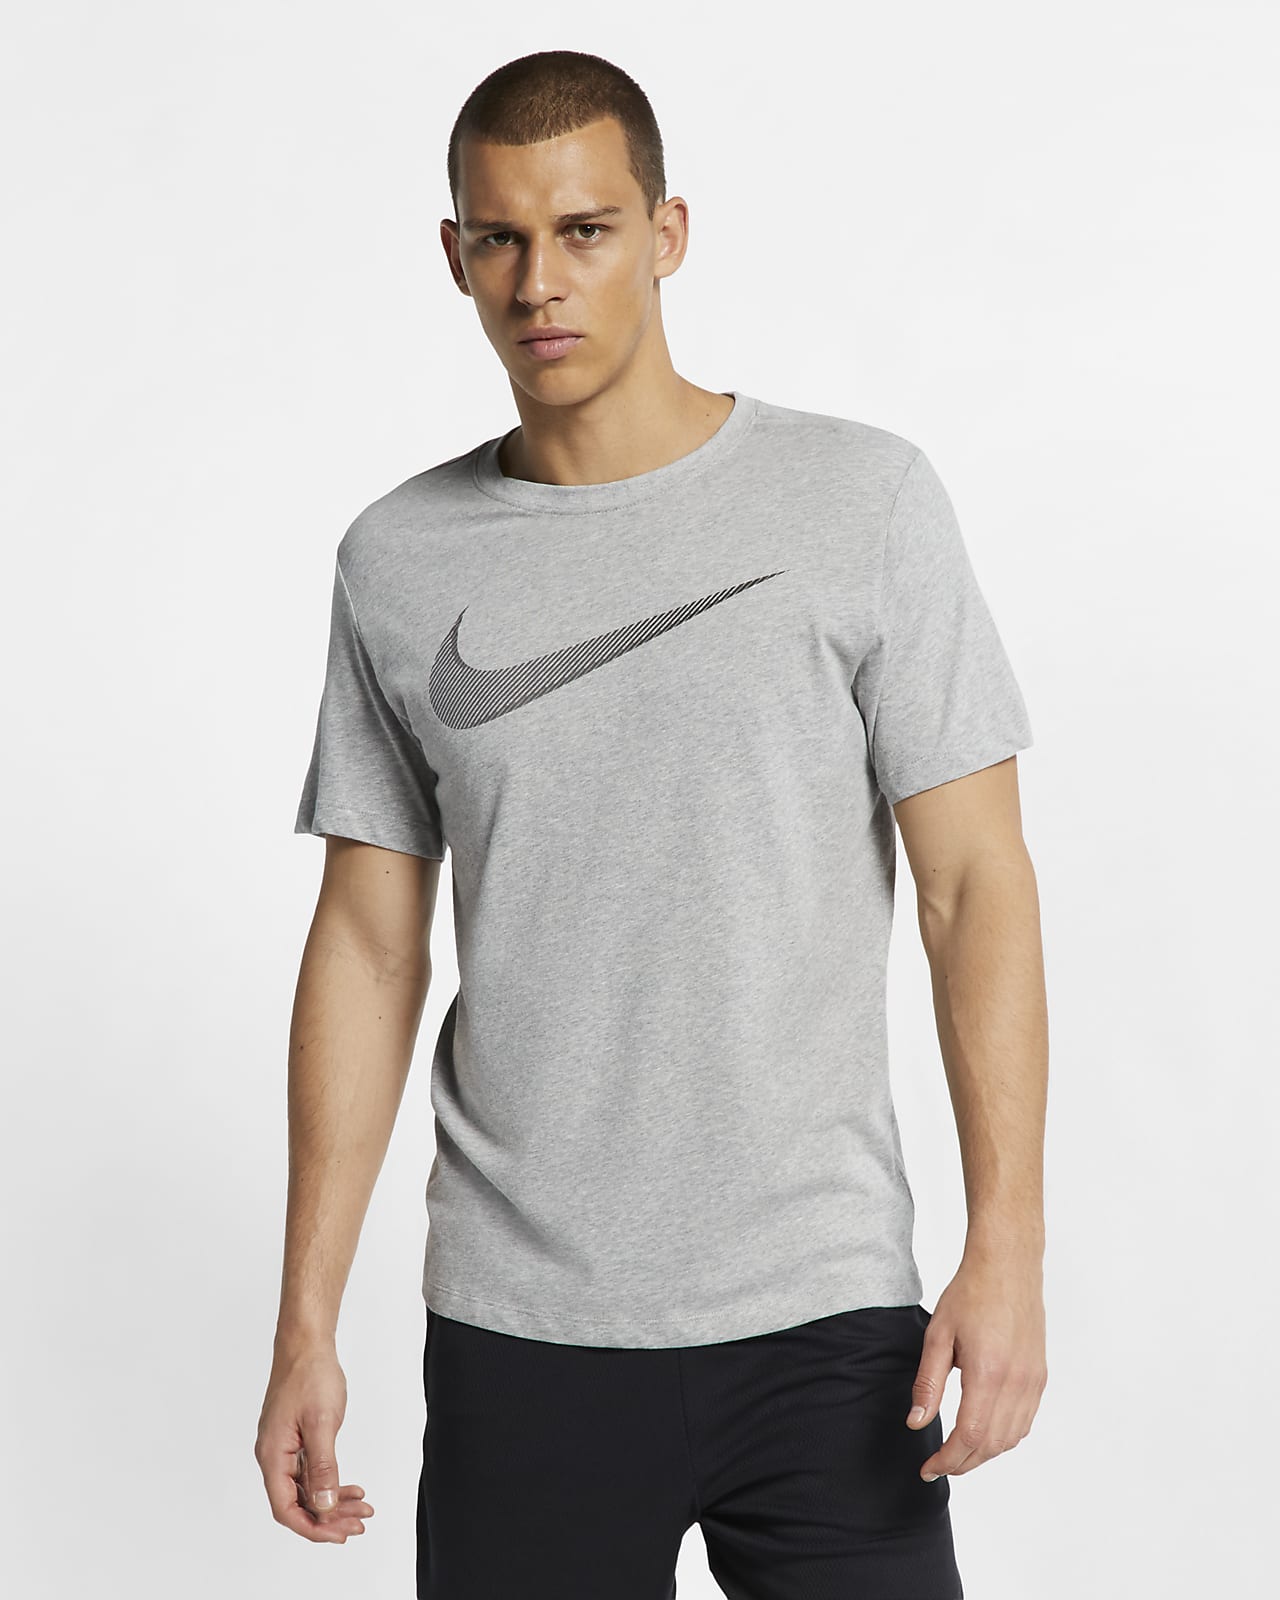 trimme side pølse Nike Dri-FIT Men's Training T-Shirt. Nike.com